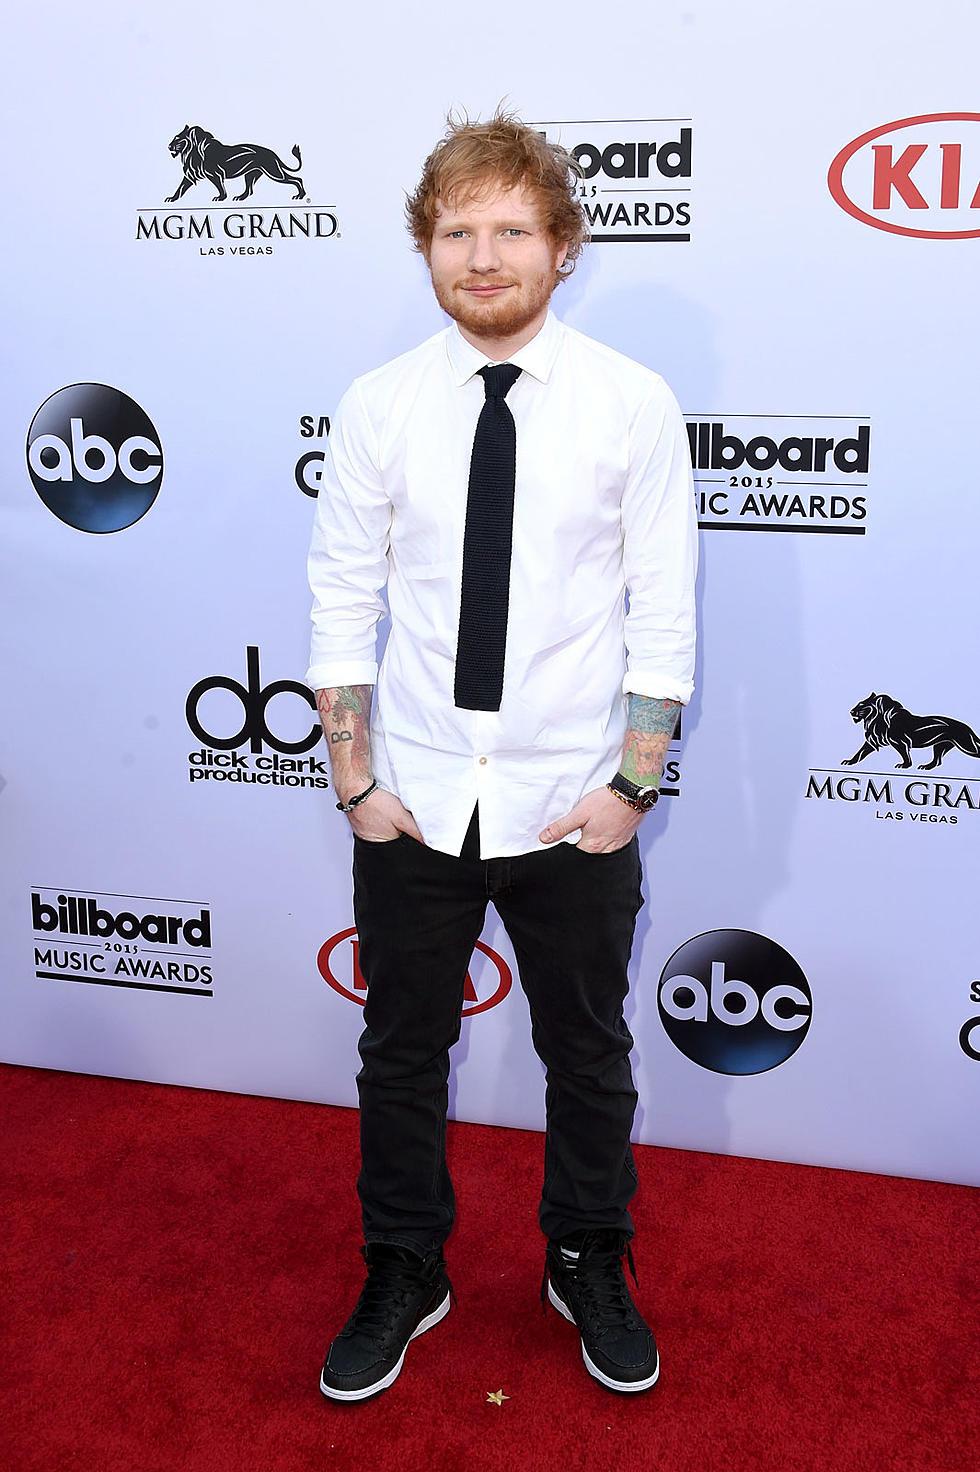 Ed Sheeran Covers Fetty Wap on Jimmy Fallon [VIDEO]